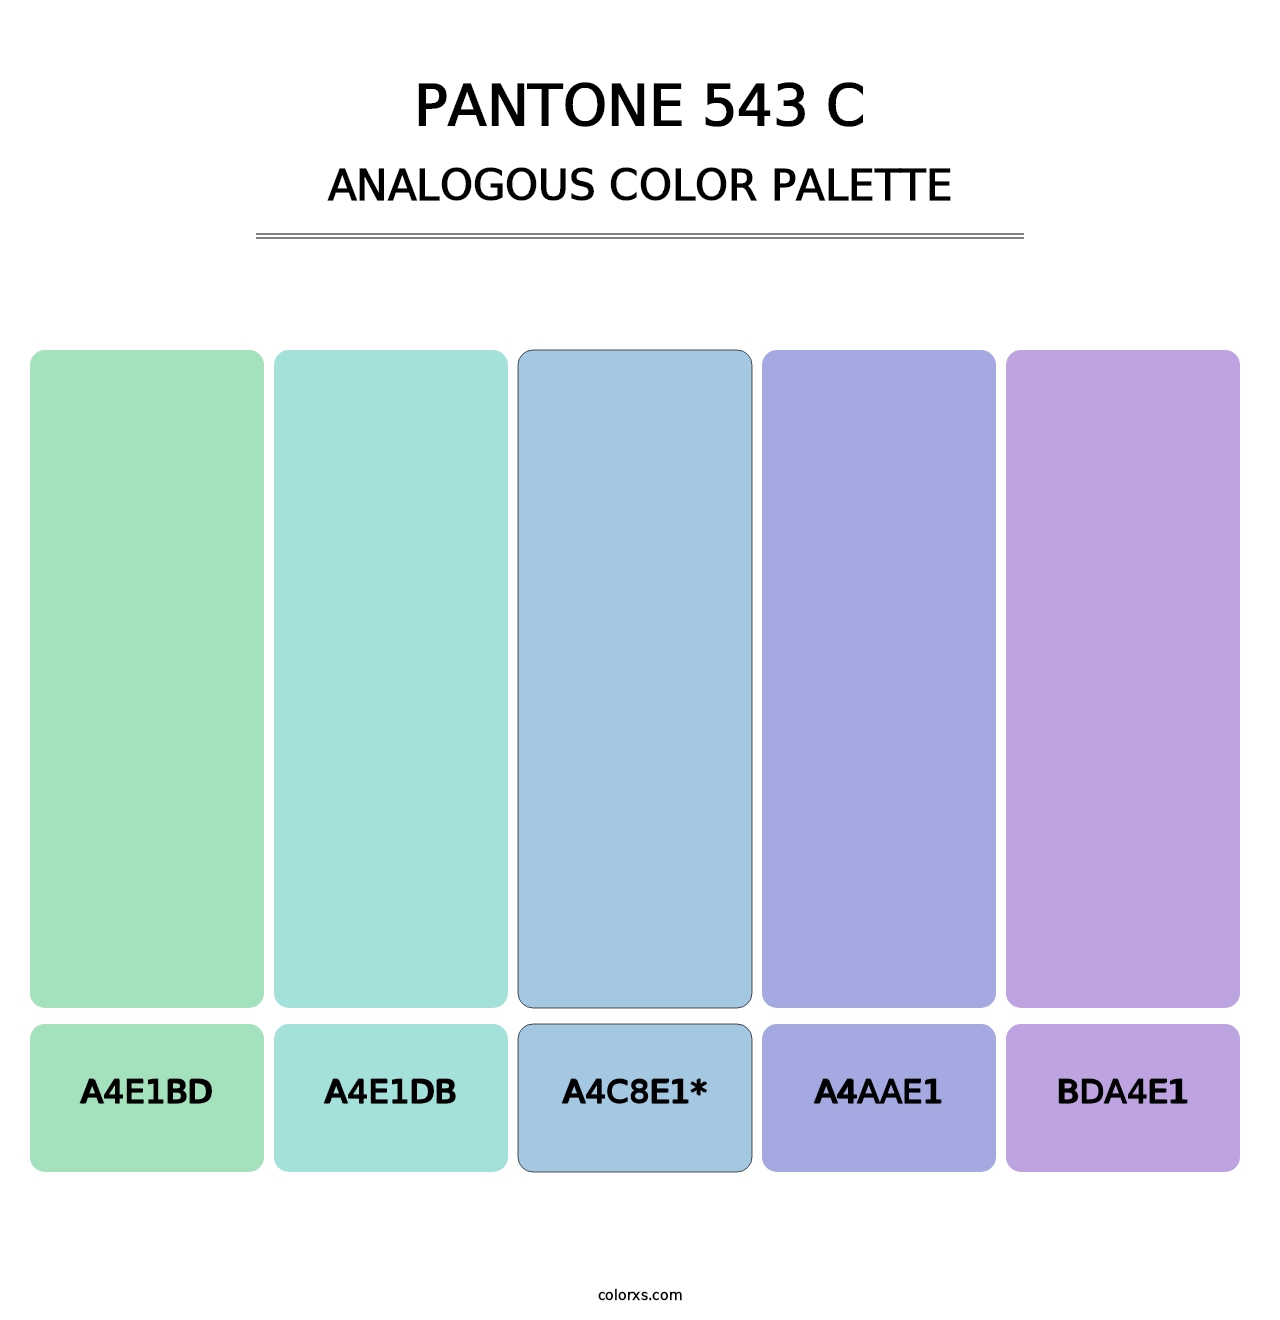 PANTONE 543 C - Analogous Color Palette